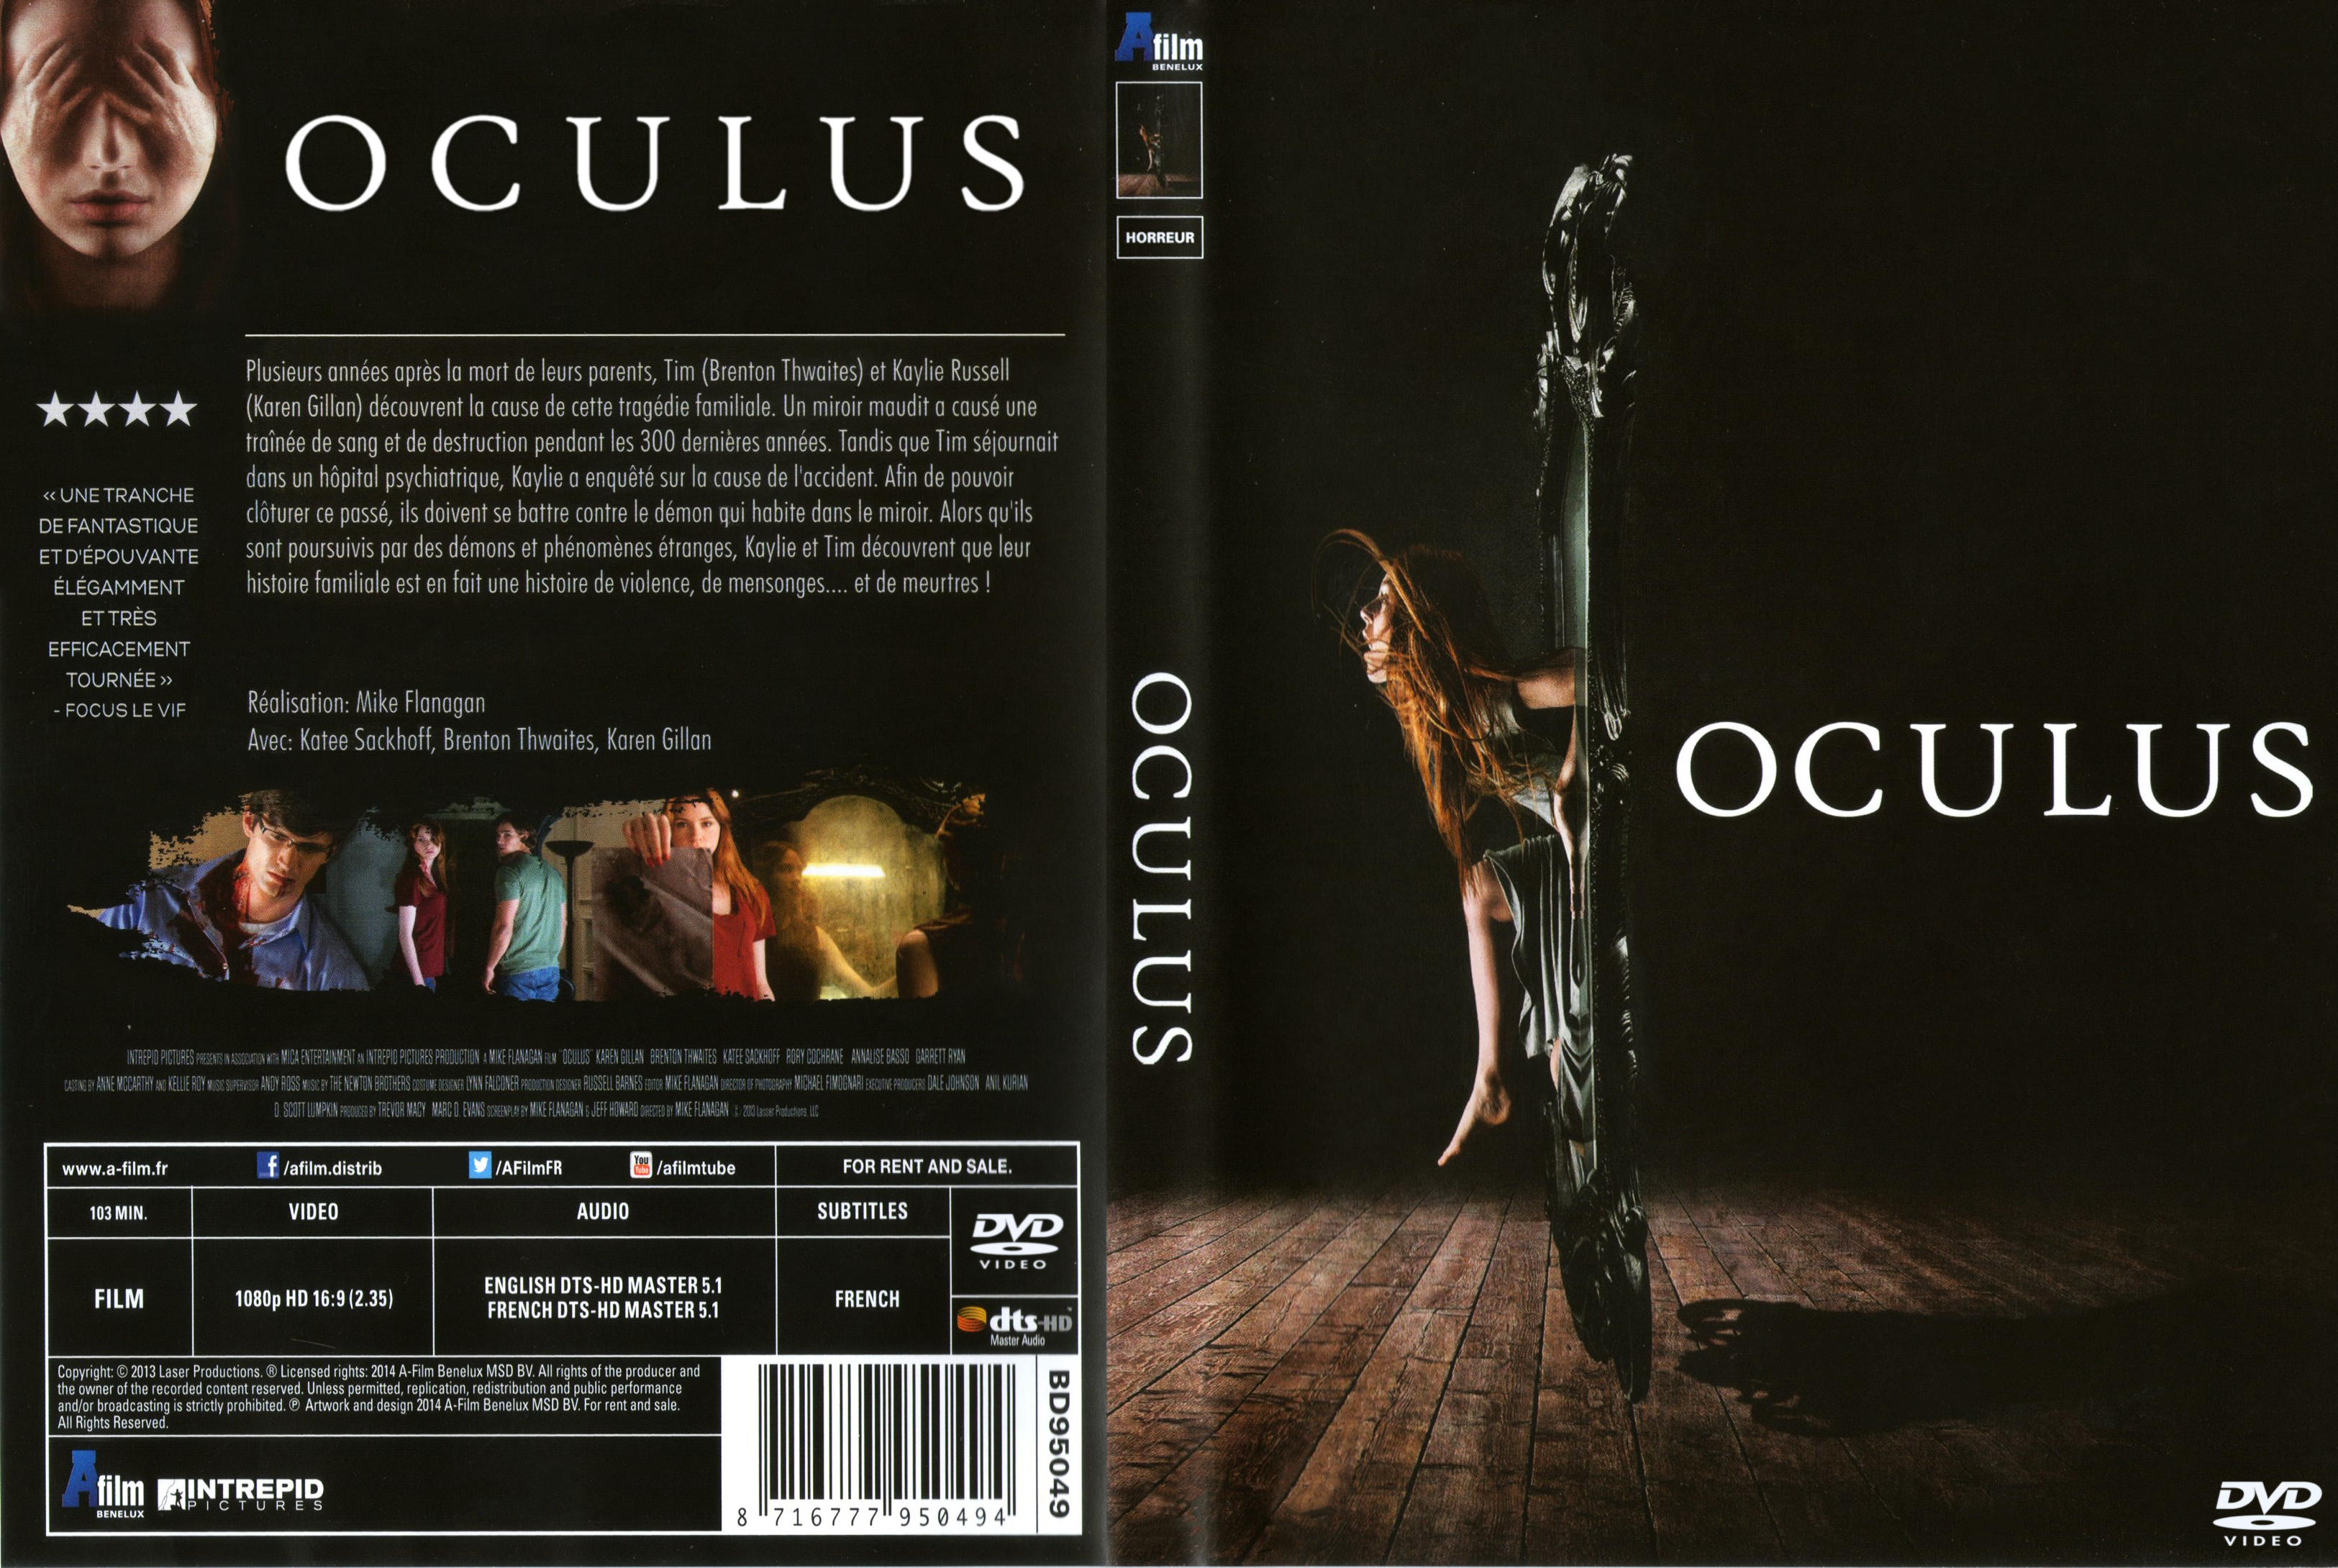 Jaquette DVD Oculus custom